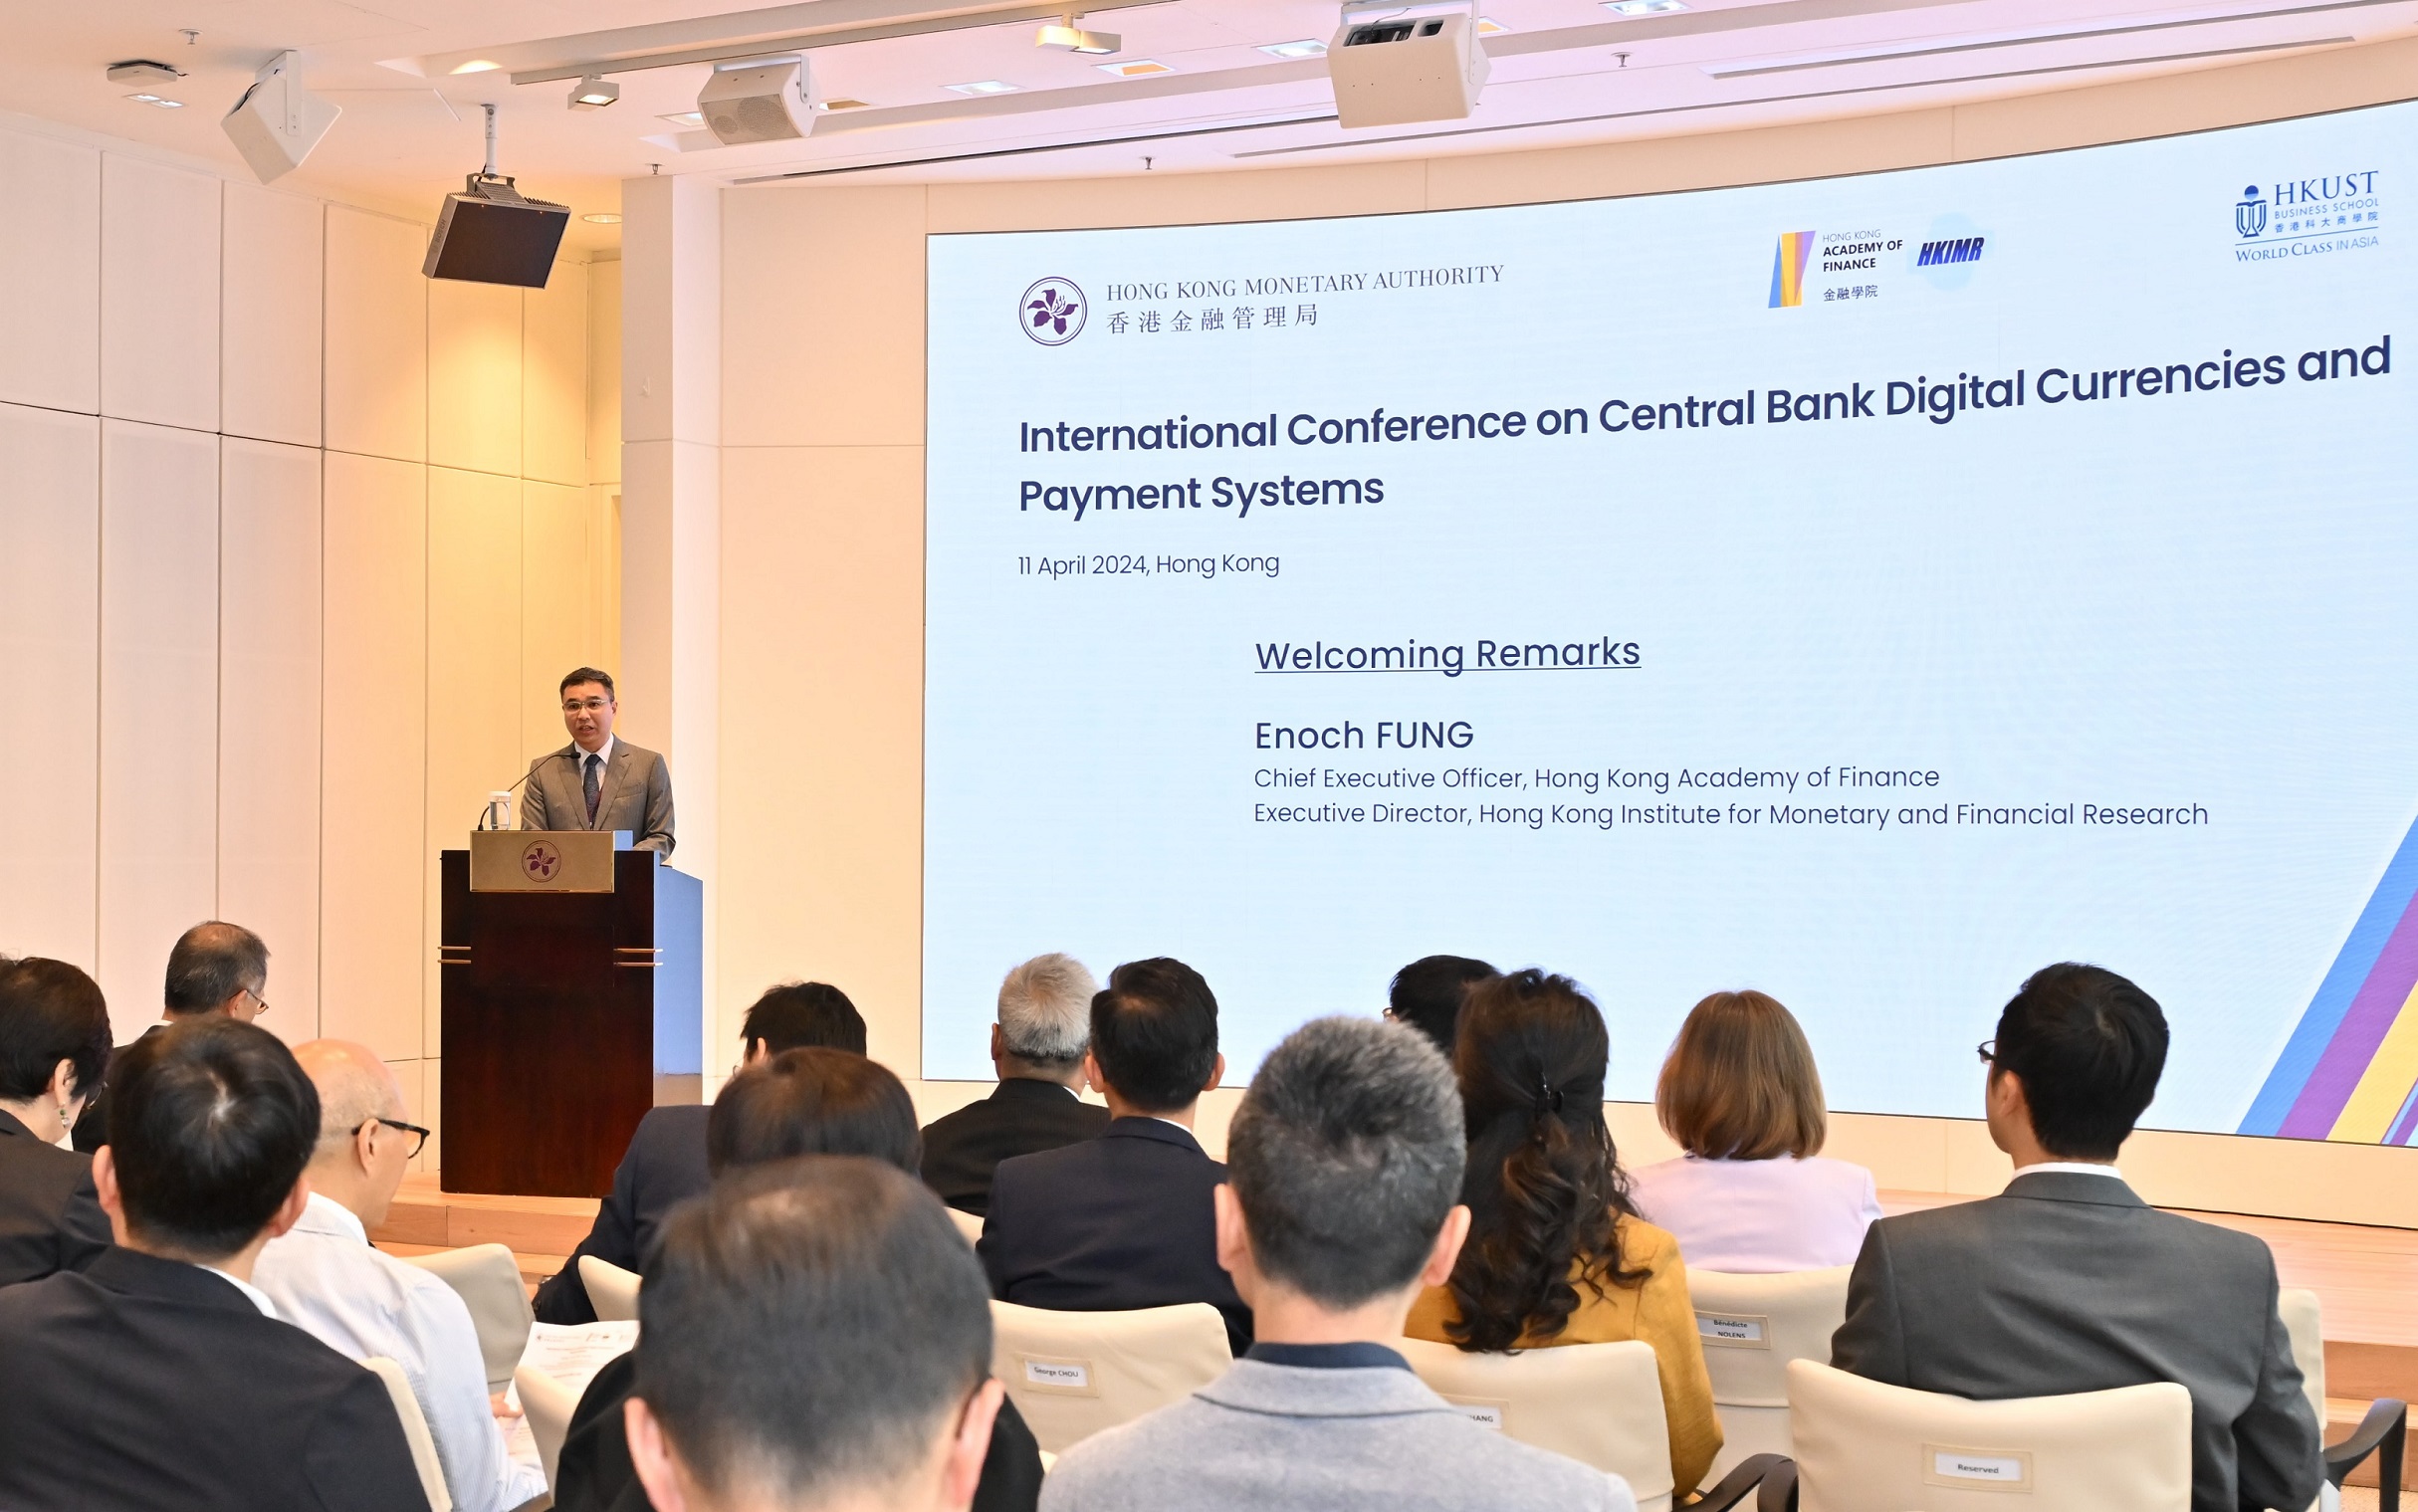 金融学院行政总裁及香港货币及金融研究中心执行主任冯殷诺在央行数码货币和支付系统国际会议致欢迎辞。